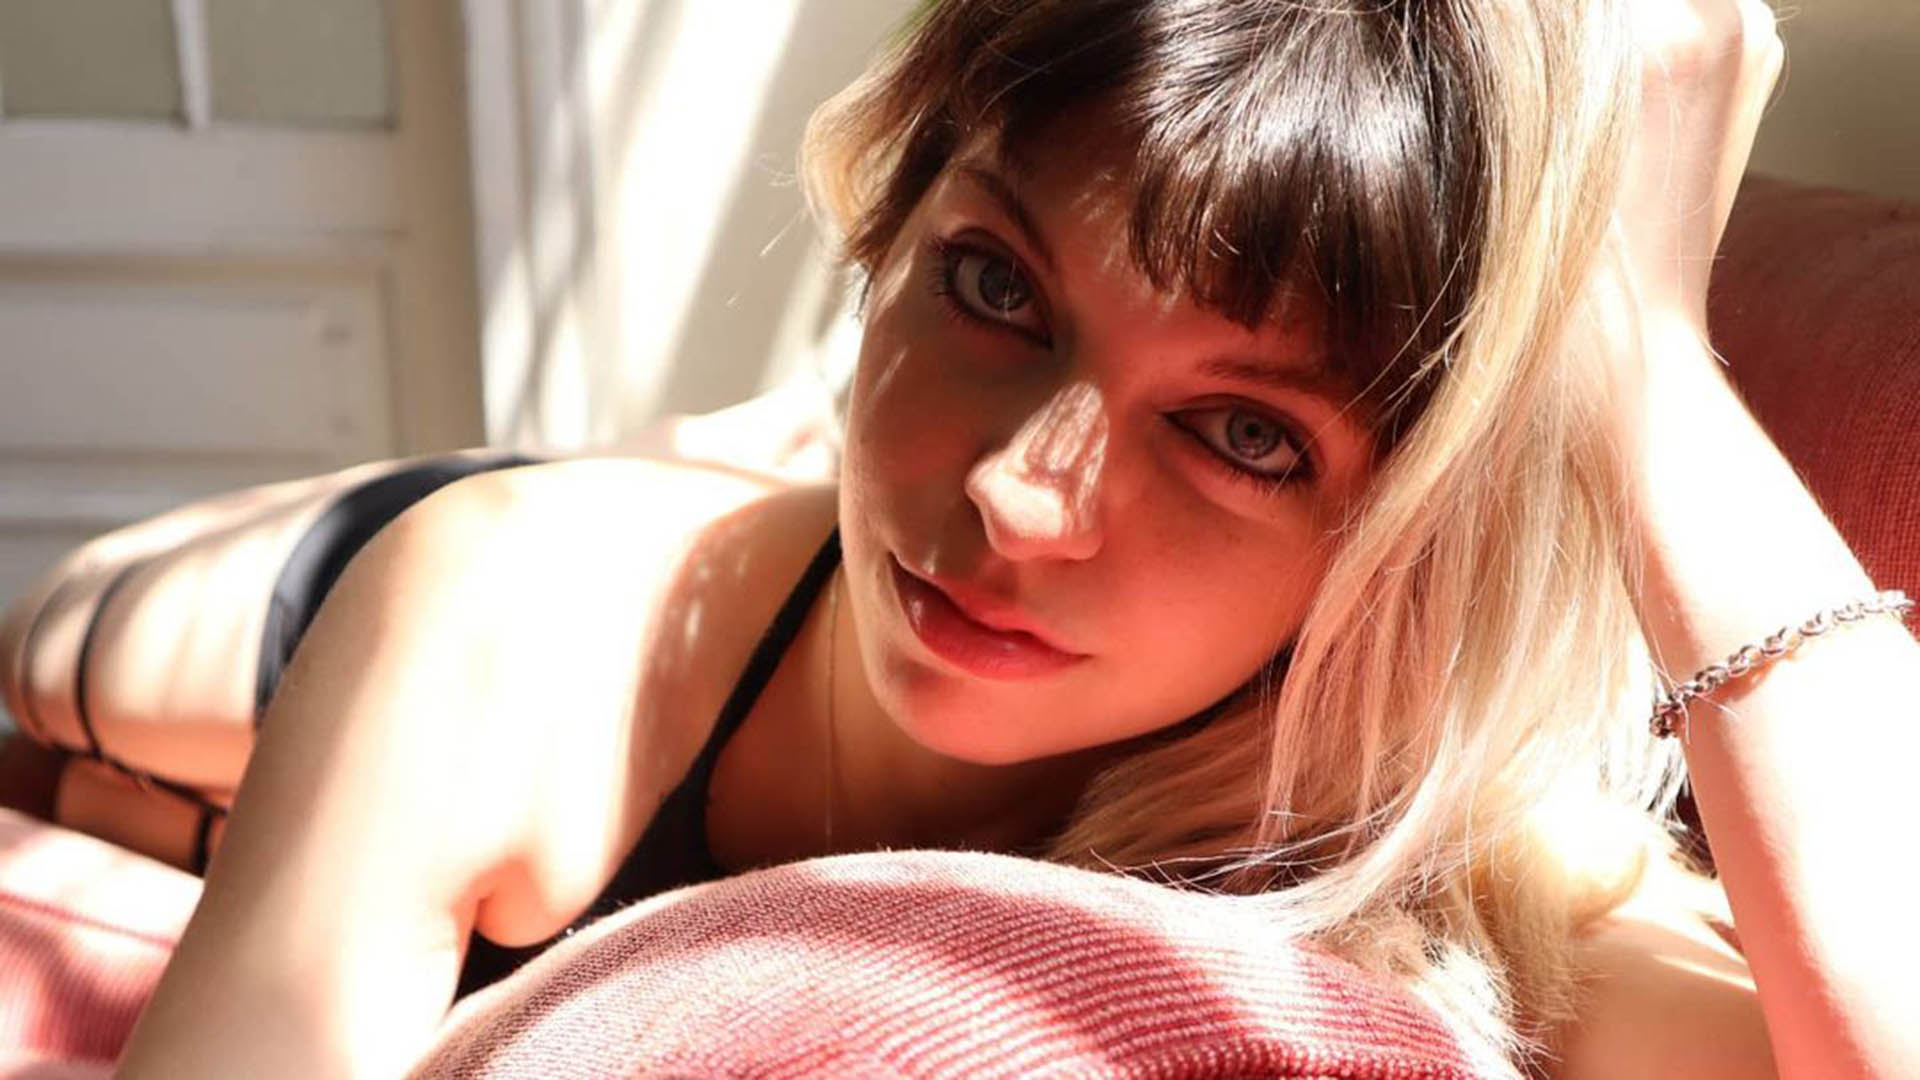 Es argentina y la llaman “la youtuber del porno” mientras se graba teniendo sexo, hace tutoriales foto foto